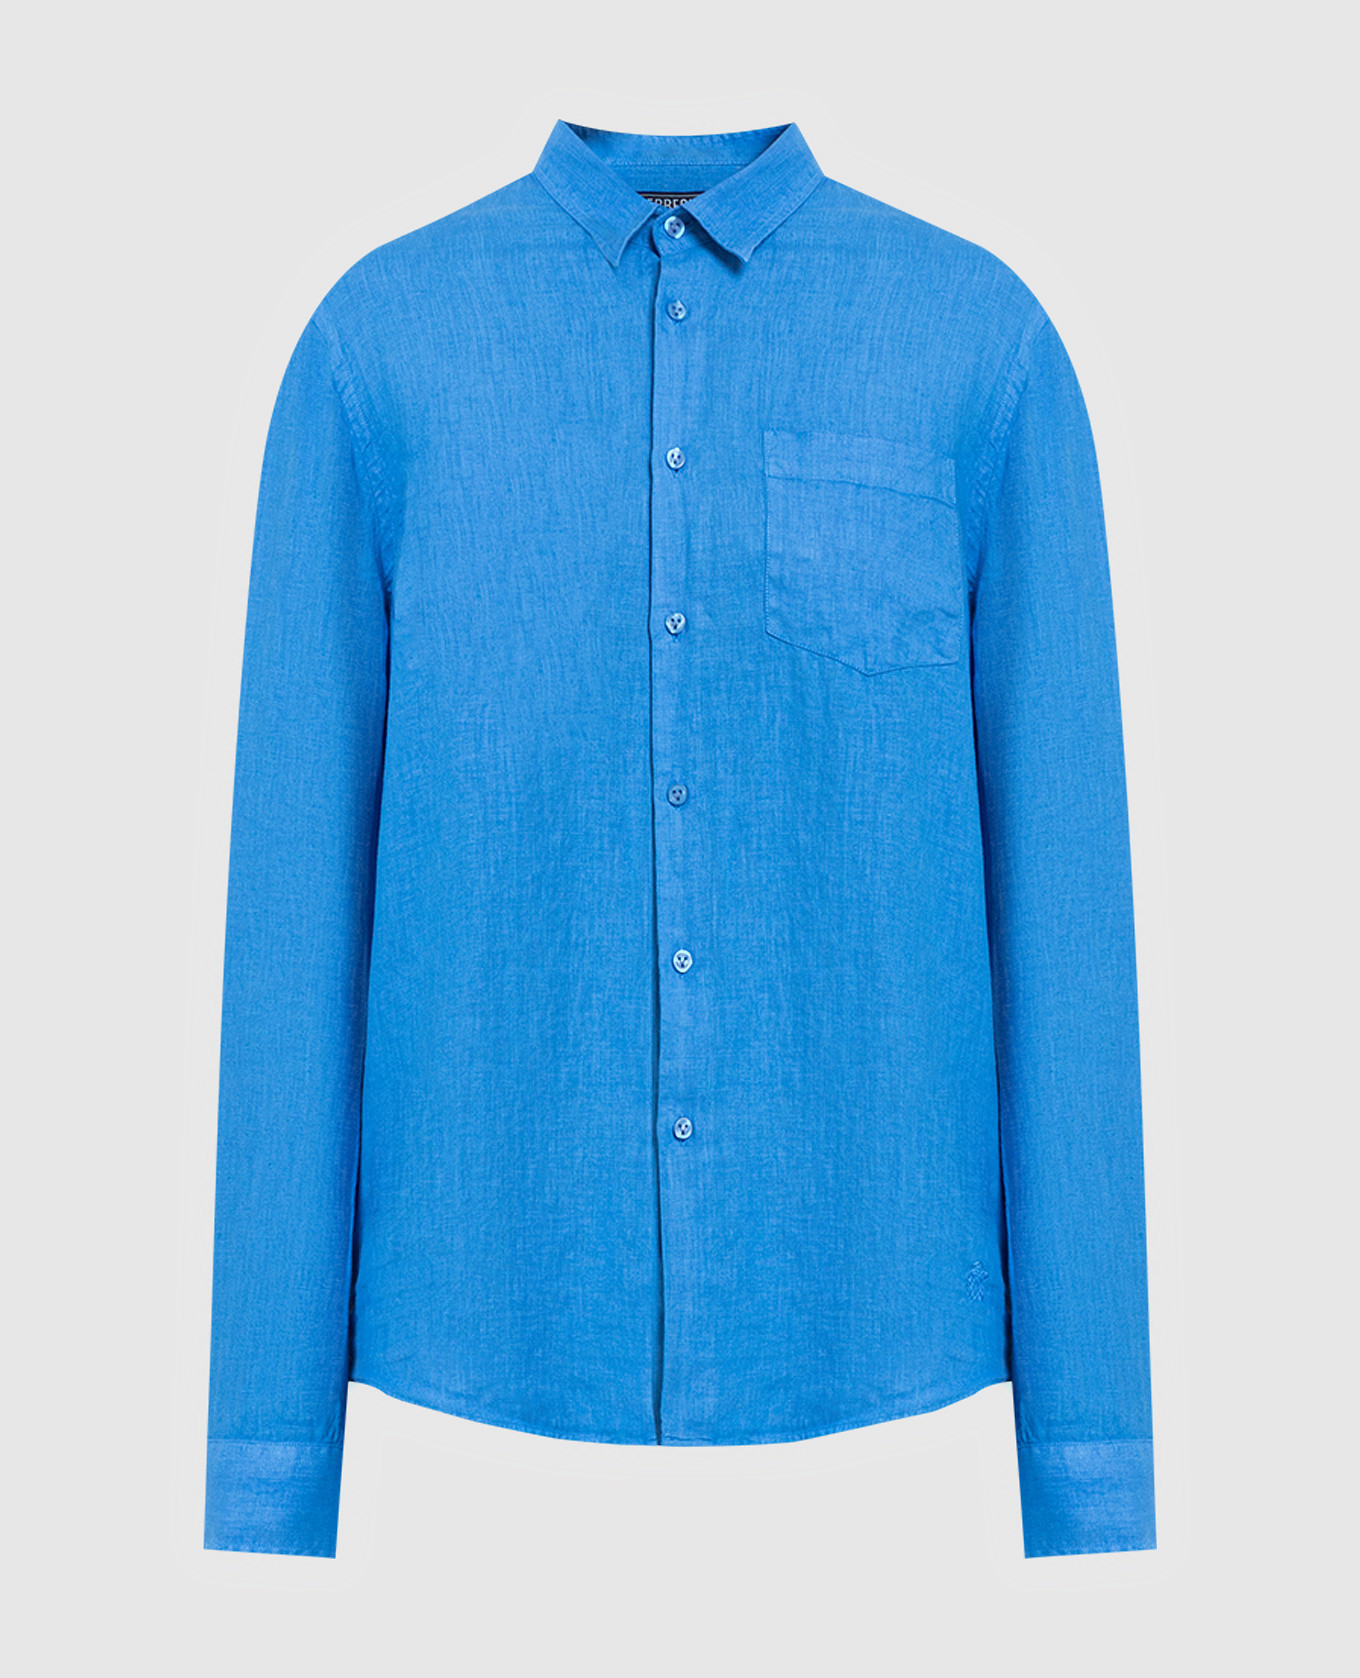 Caroubis blue linen shirt